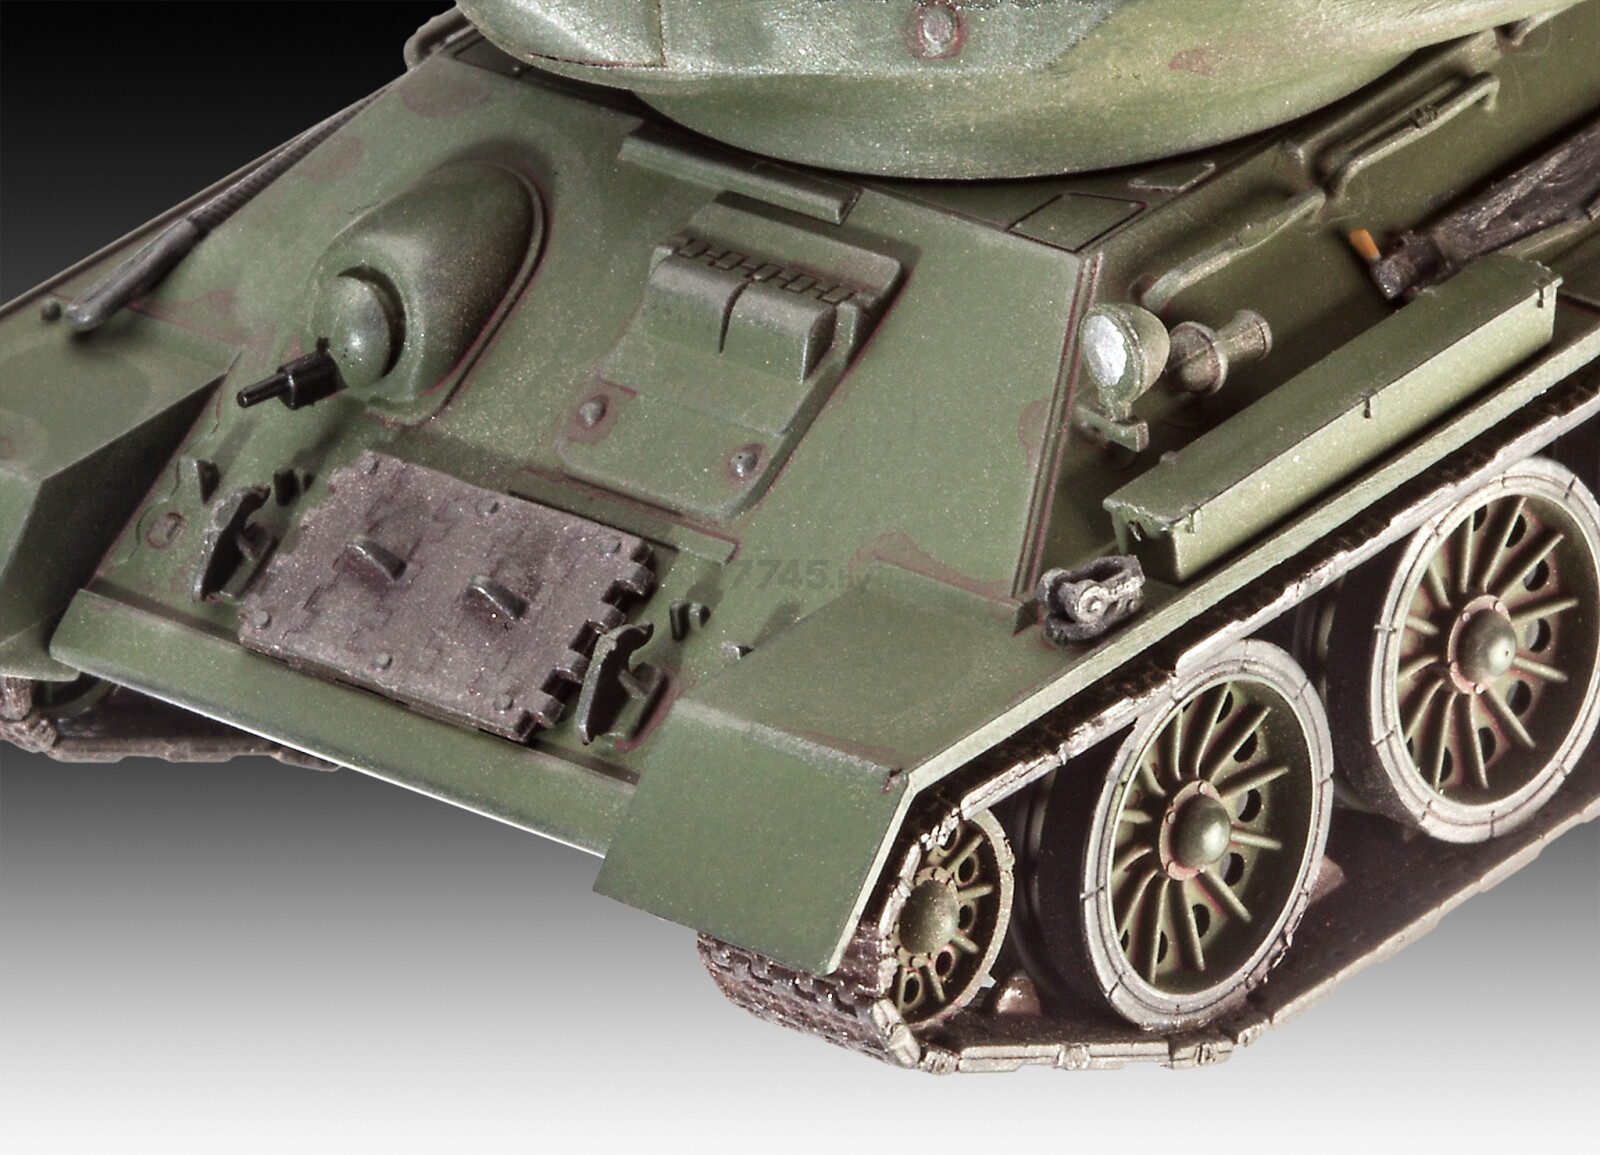 Сборная модель REVELL Советский танк Т-34/85 1:72 (3302) - Фото 2